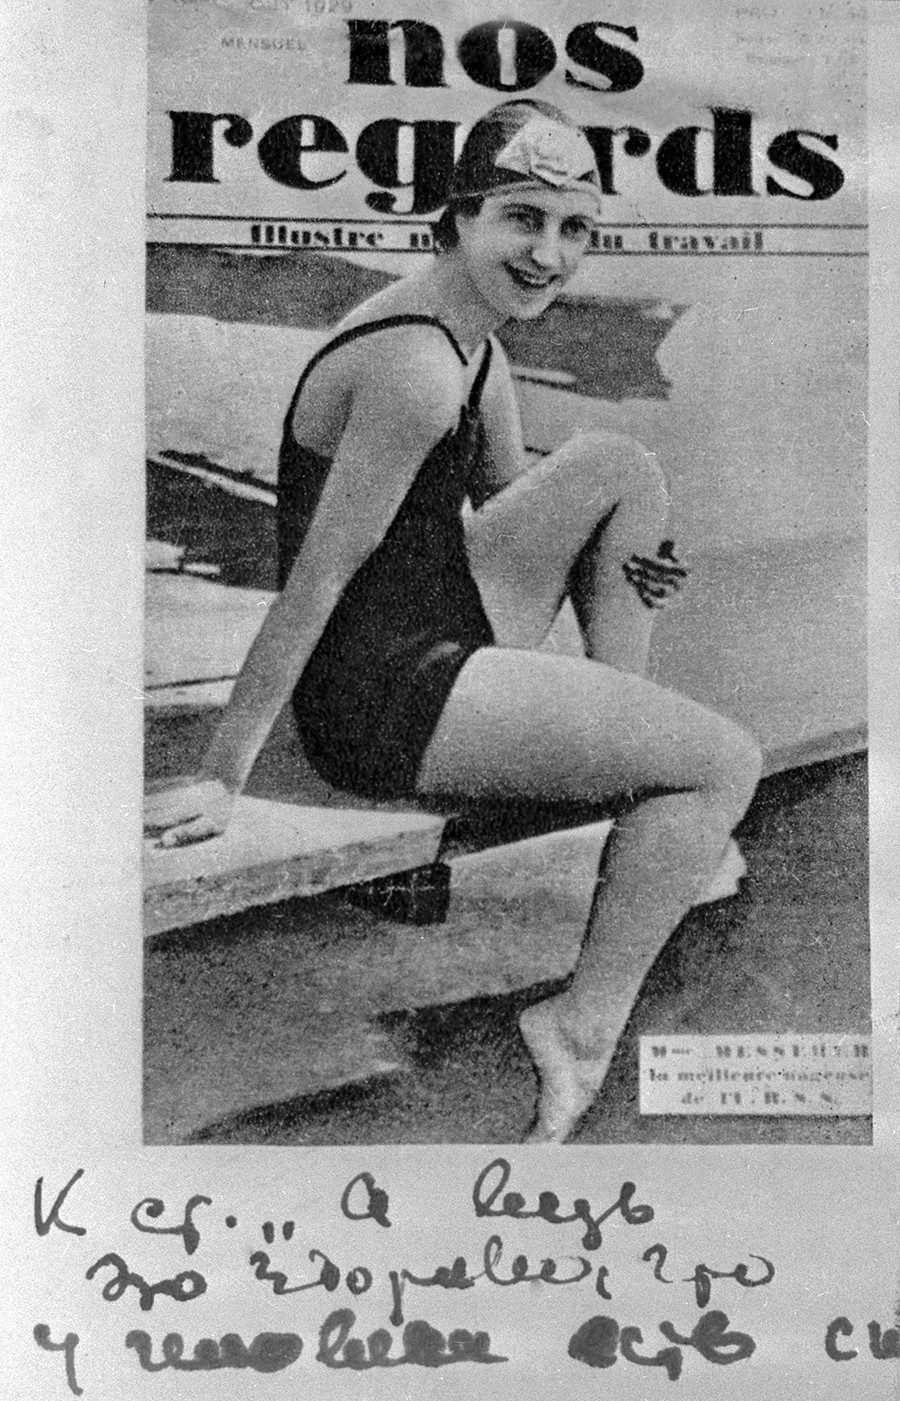 Балерина Суламиф Месерер (1908-2004) поред балета се бавила пливањем. На Свесавезној спартакијади 1928. године (која је уједно била и првенство СССР-а у пливању) освојила је две златне медаље. С. Месерер на првој страници часописа „Nos regards“.